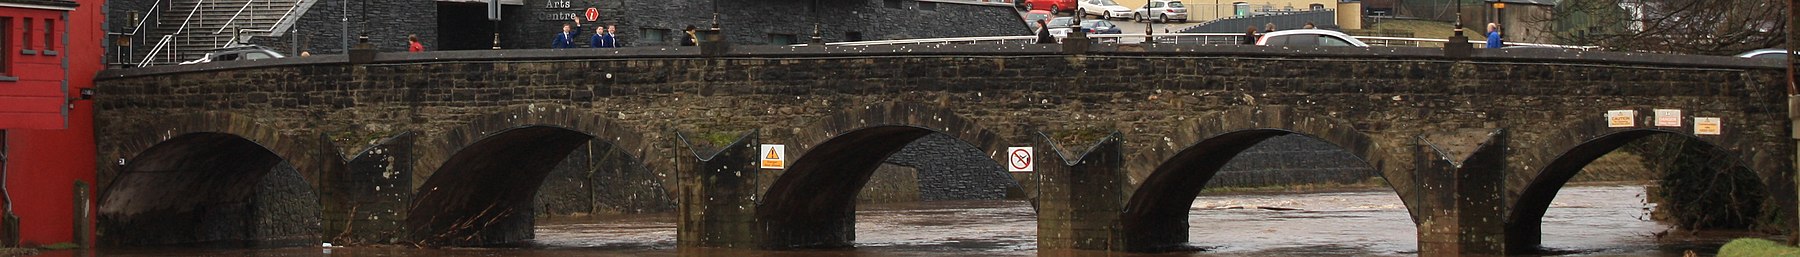 Omagh banner Bridge.JPG